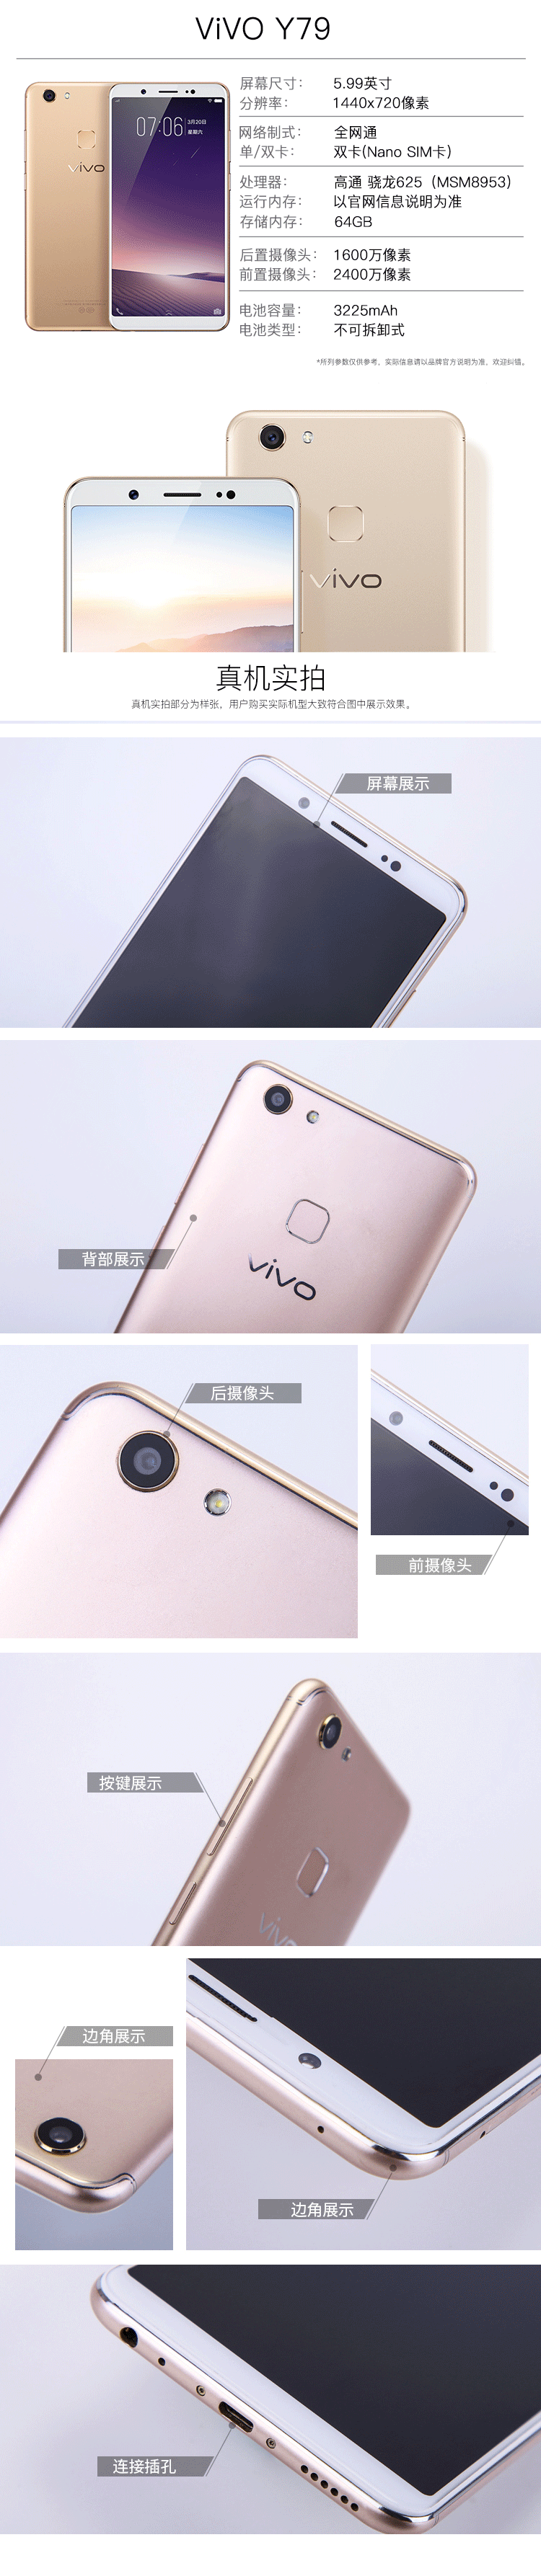 vivoy79二手手机安卓手机指纹面部识别4g全网通智能拍照手机备用工作